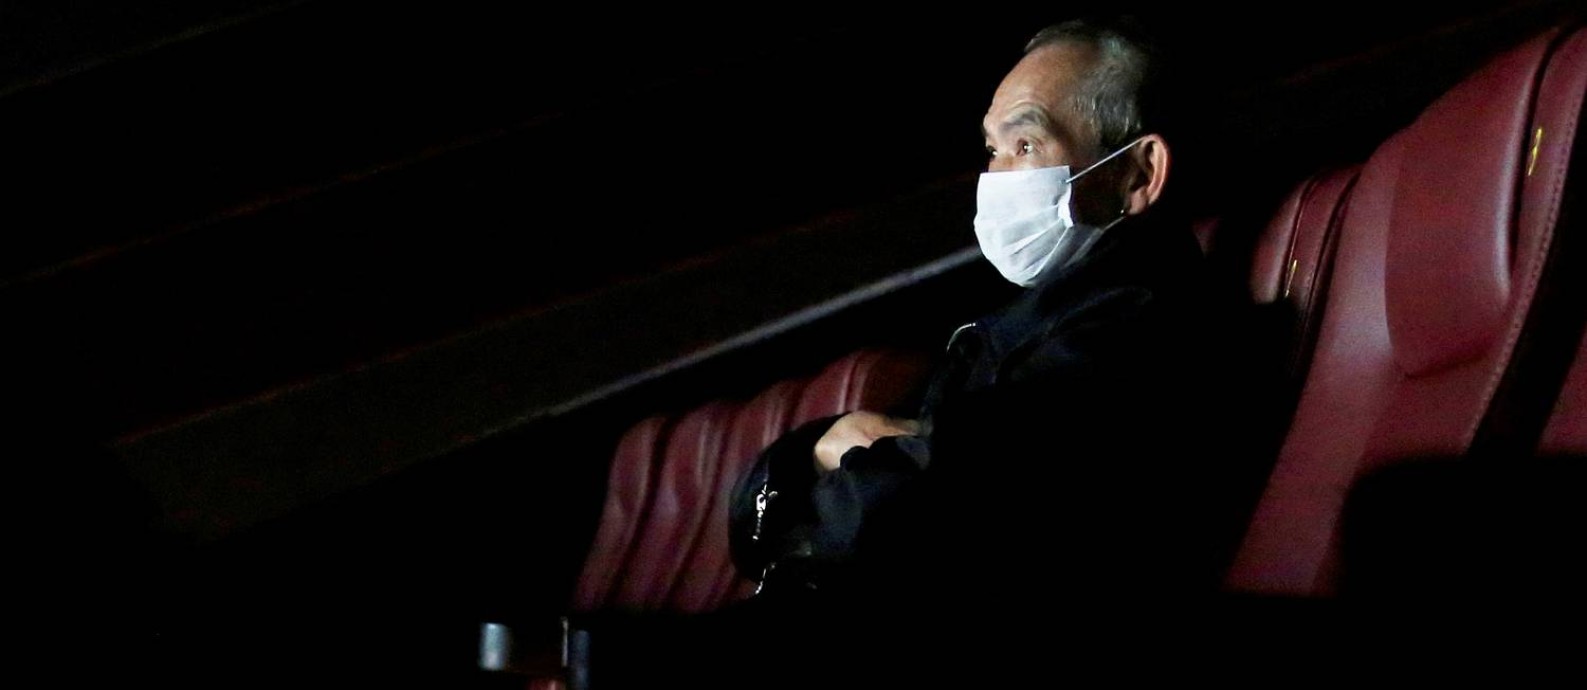 Homem usa máscara num cinema vazio de Hong Kong: prejuízo no cinema pode chegar a U$5 bilhões
Foto: TYRONE SIU / REUTERS